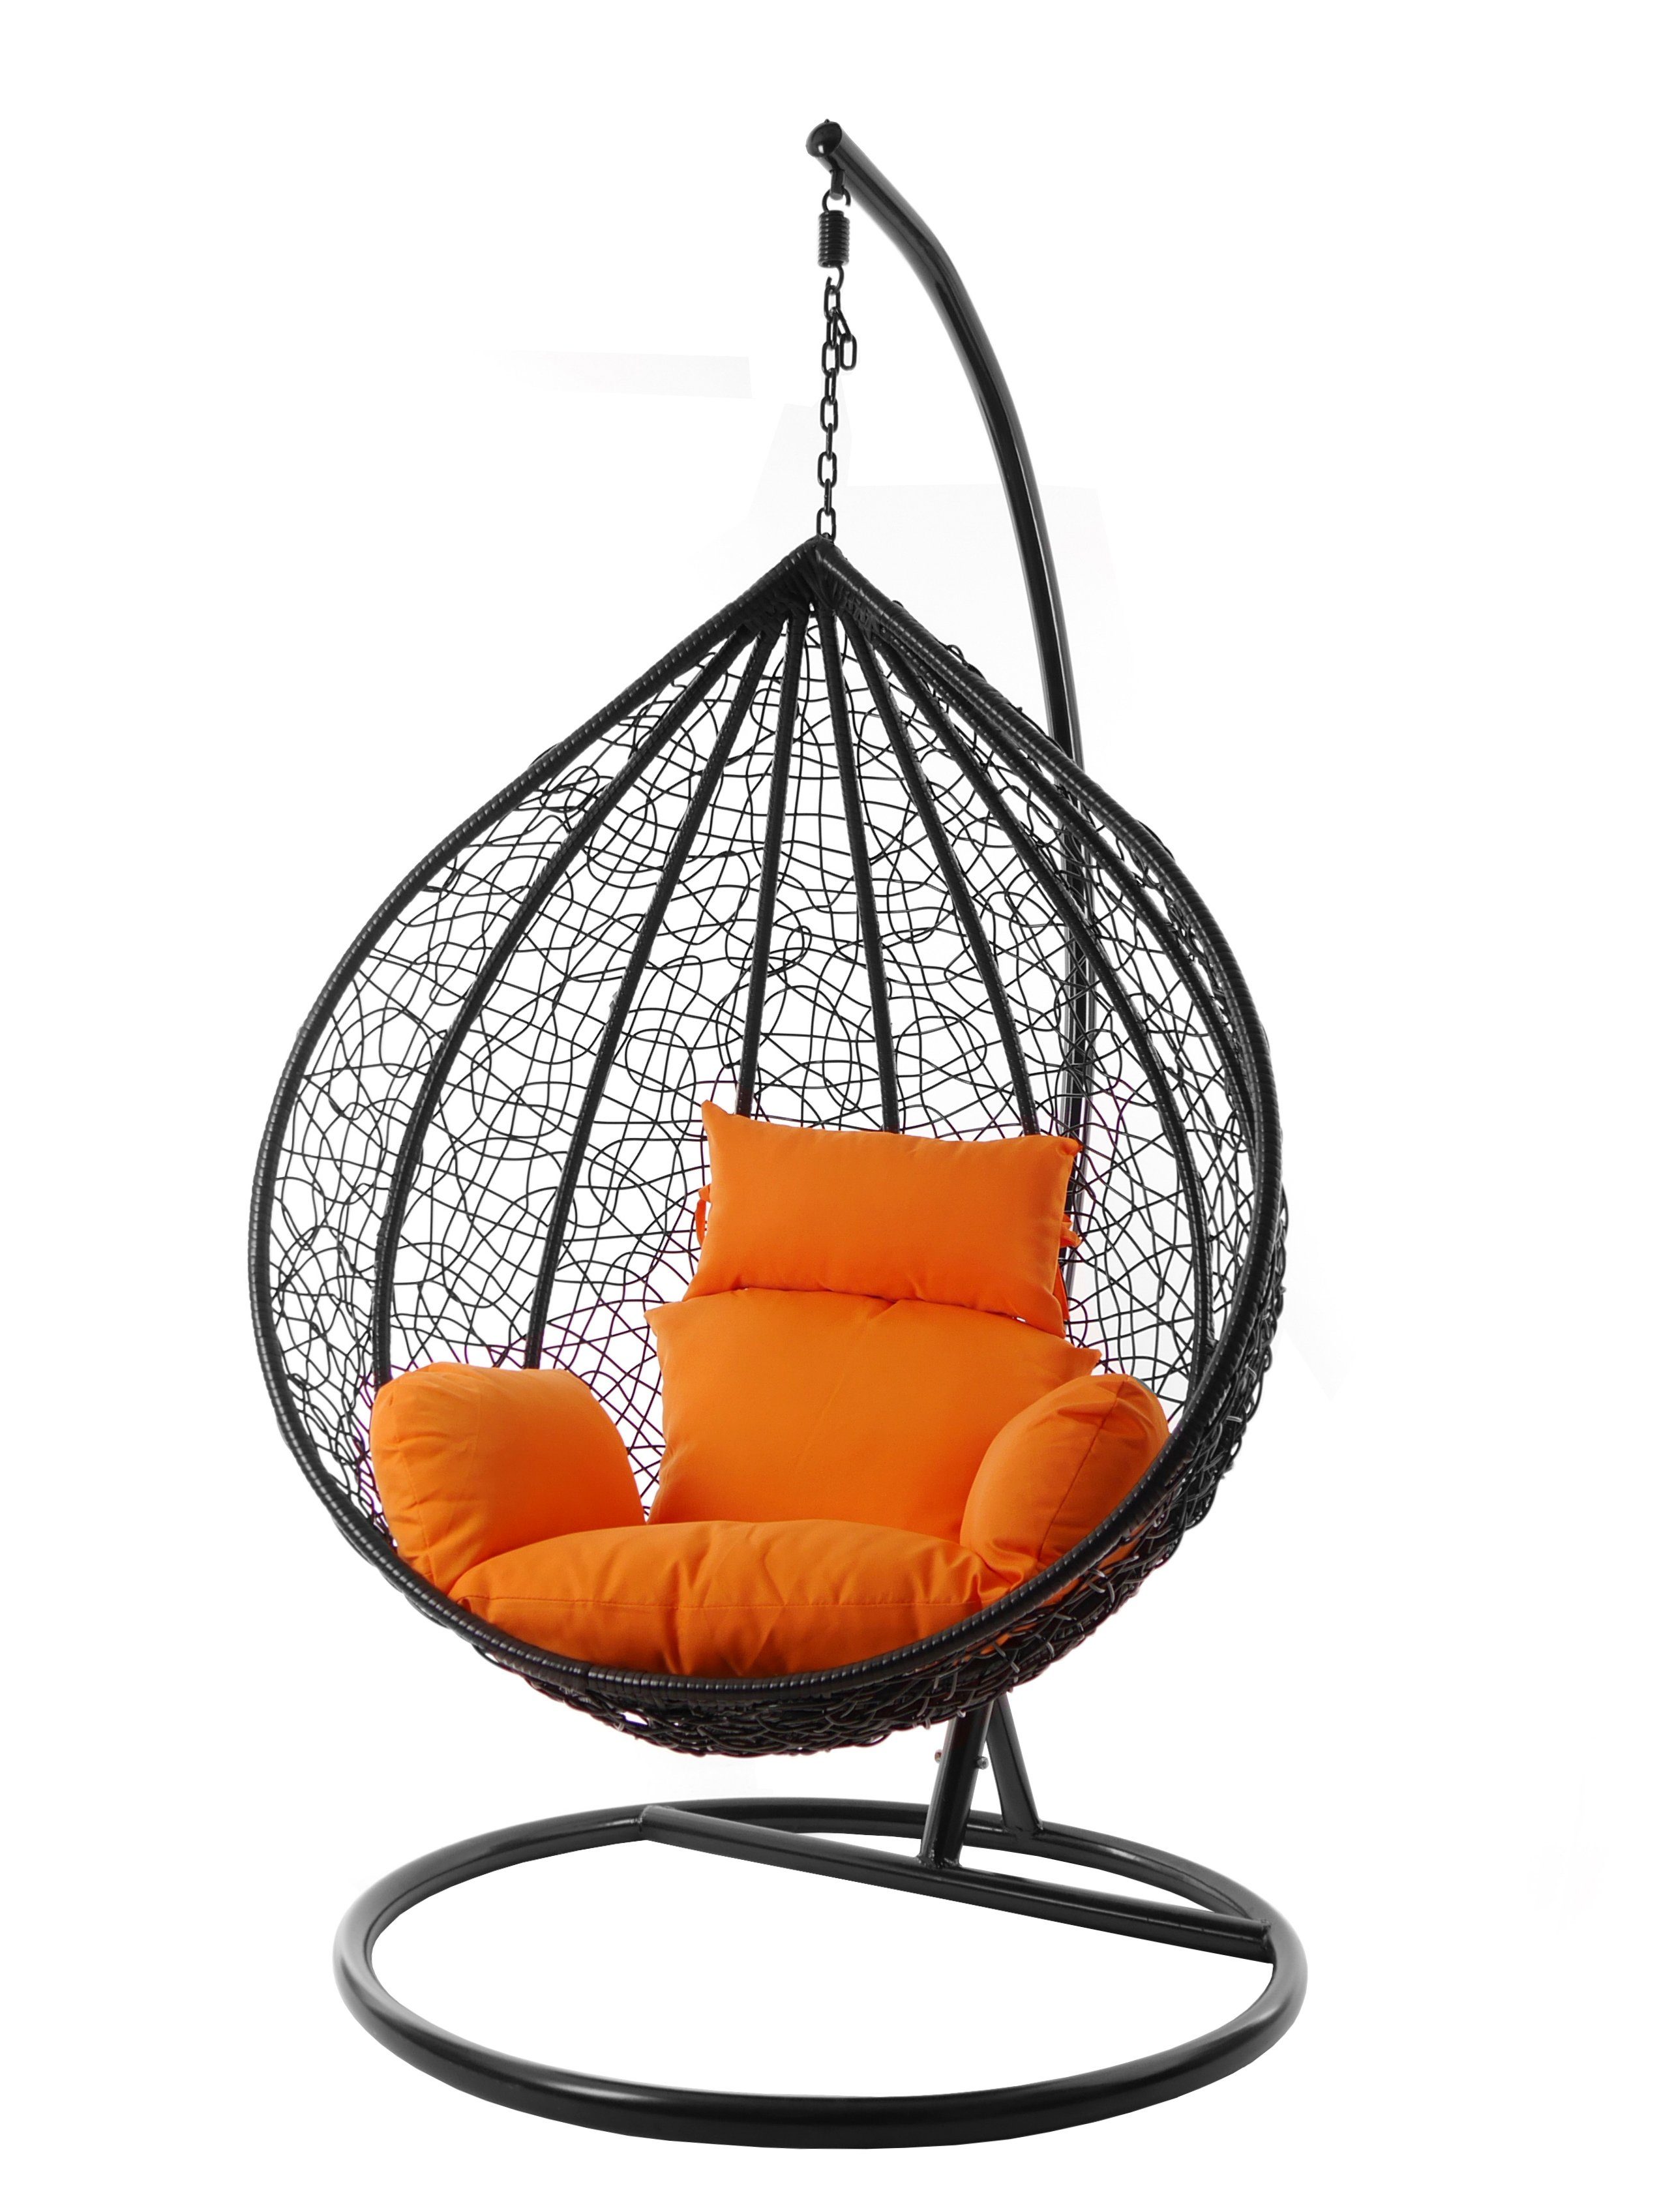 KIDEO Hängesessel und inklusive, tangerine) edel, Kissen (3030 MANACOR Chair, Swing Farben verschiedene orange schwarz, Gestell Hängesessel XXL Nest-Kissen